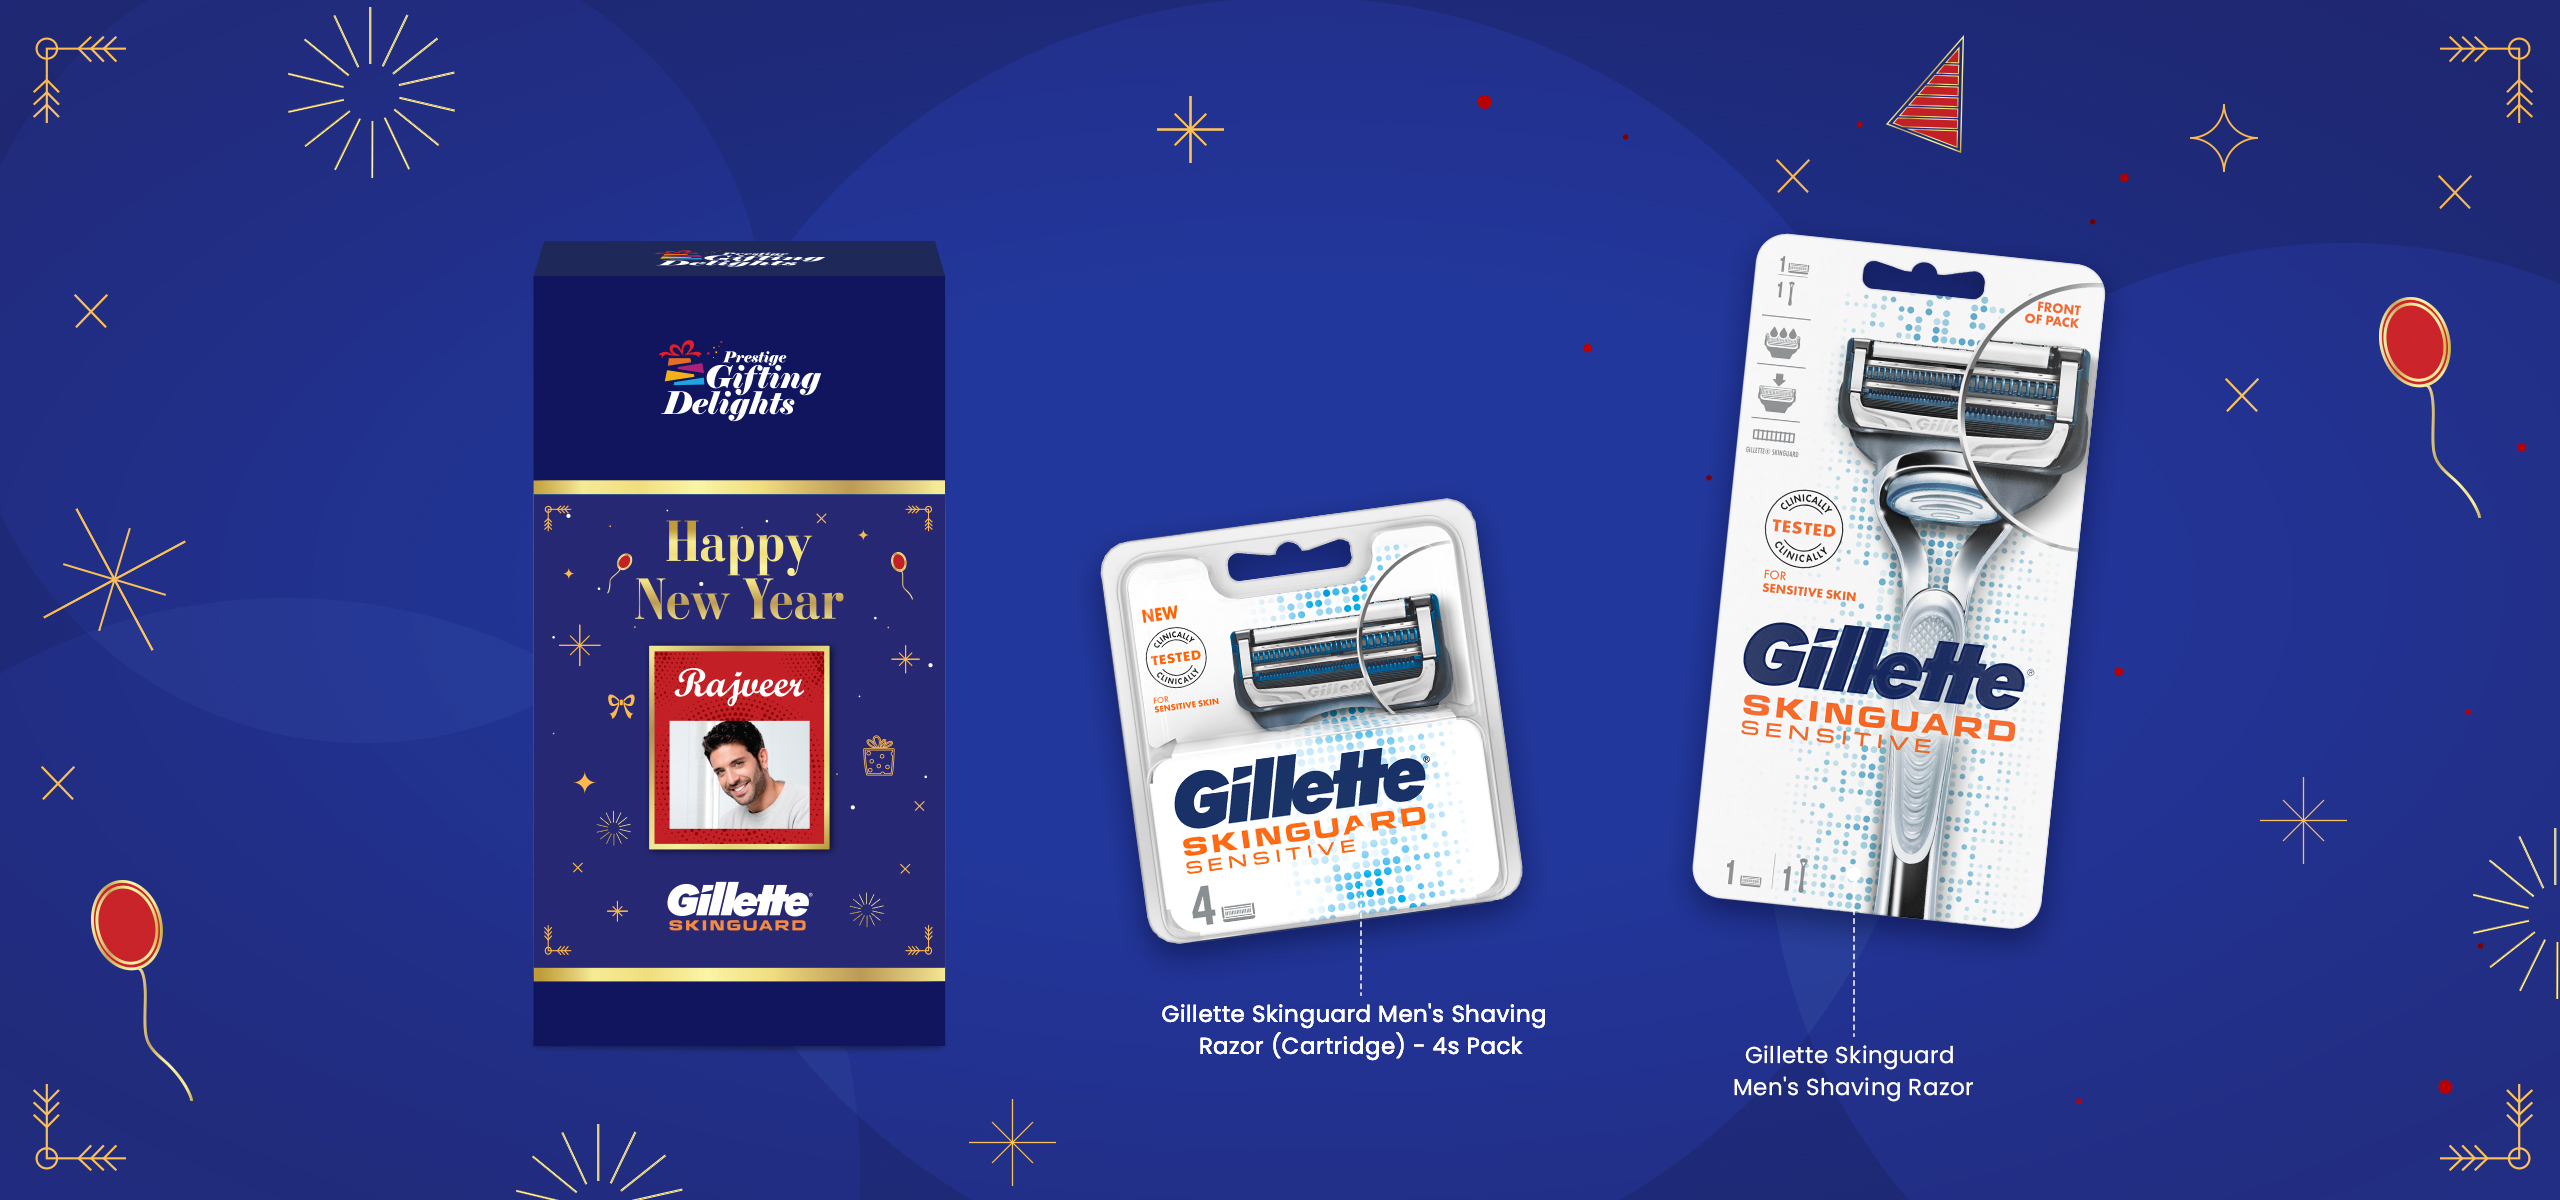 Gillette Skinguard Razor Shaving New Year Gift Pack for Men with 4 Cartridge